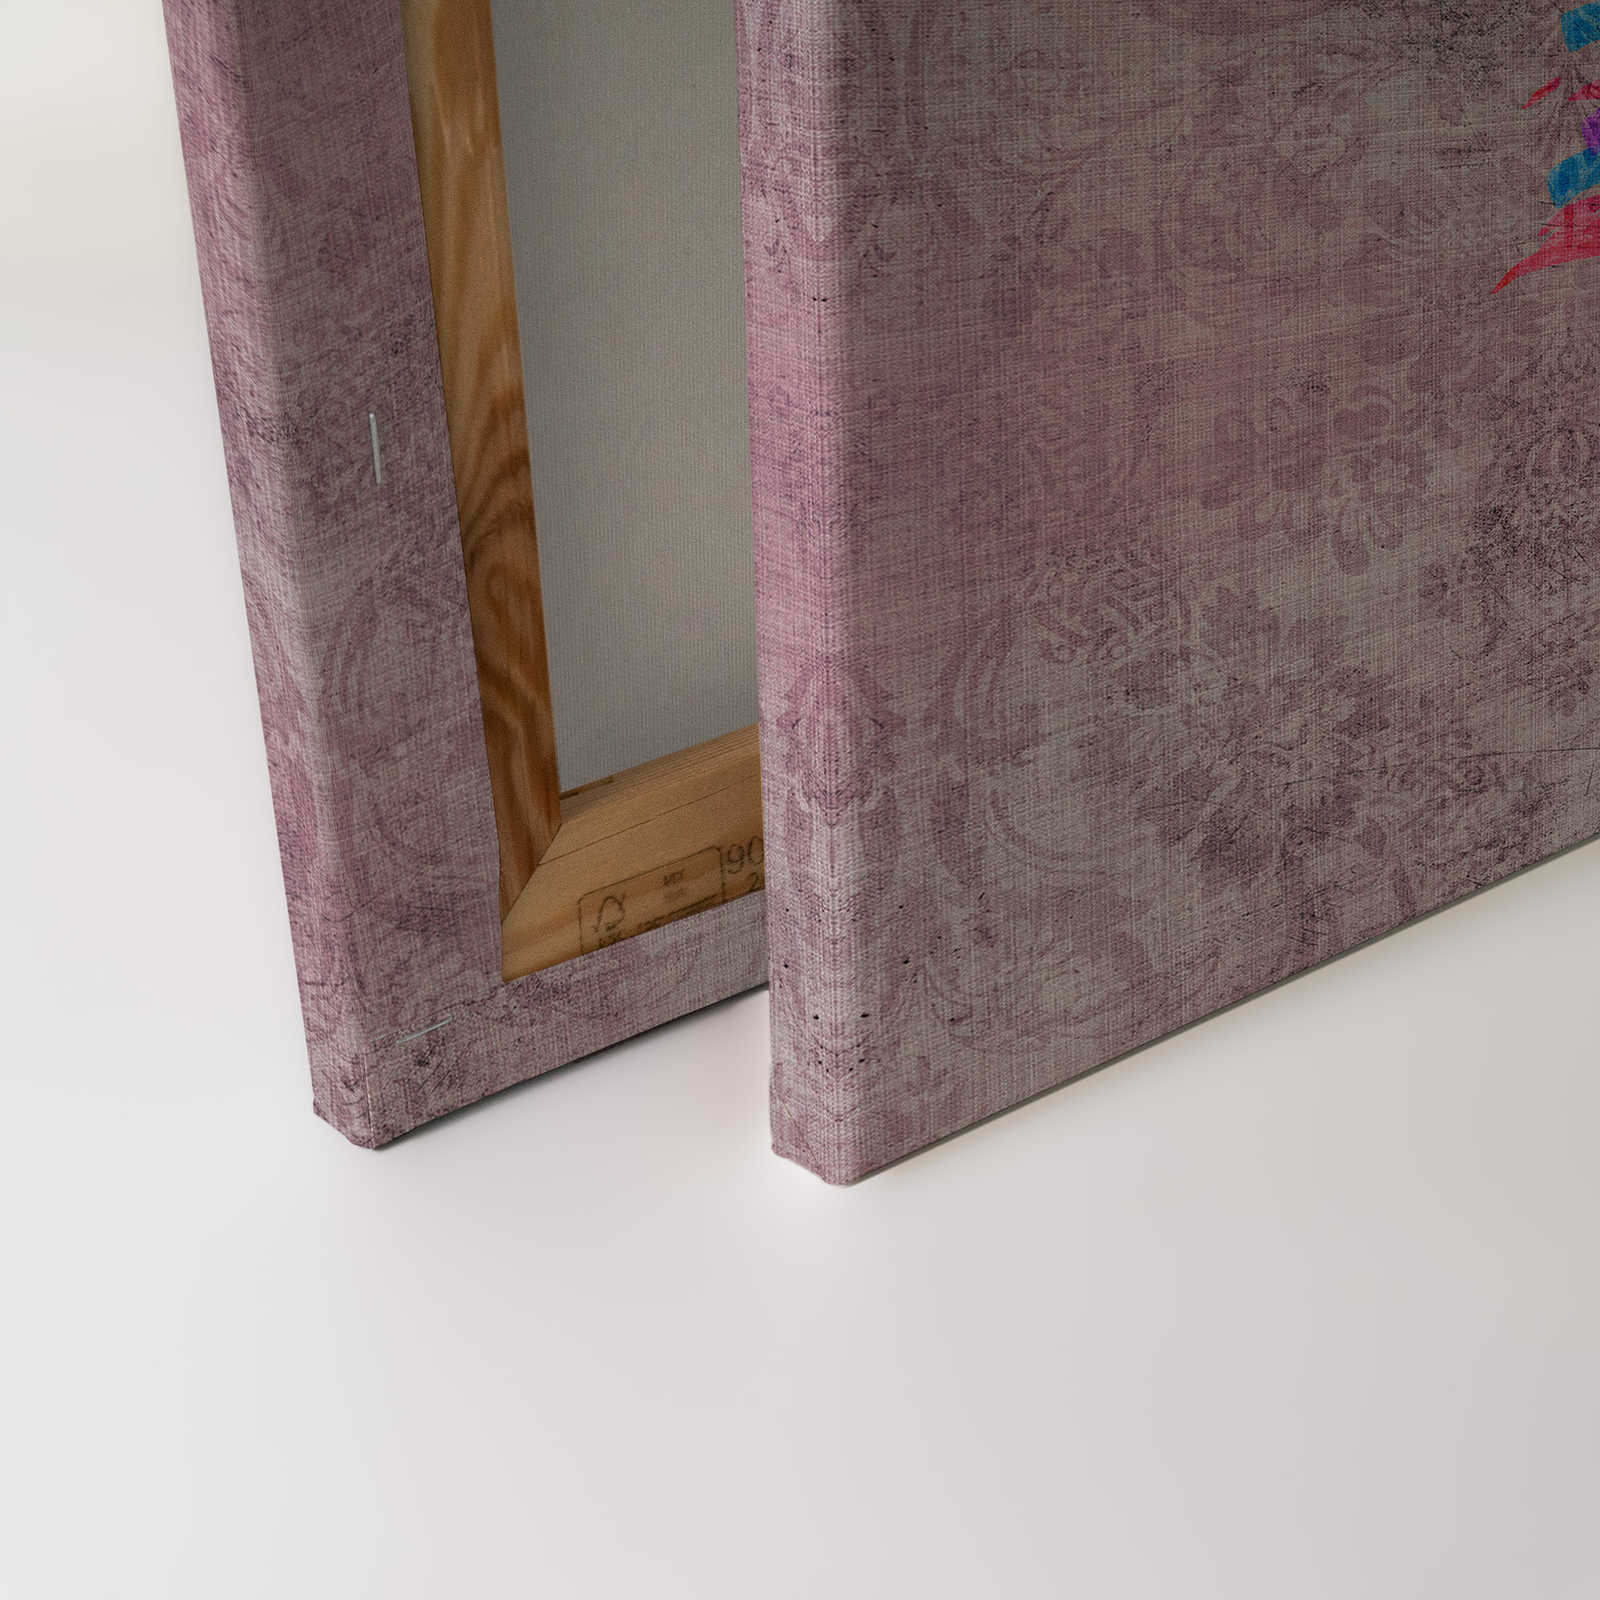             Pavone 2 - Quadro su tela con motivo a pavone e ornamenti in lino naturale - 0,90 m x 0,60 m
        